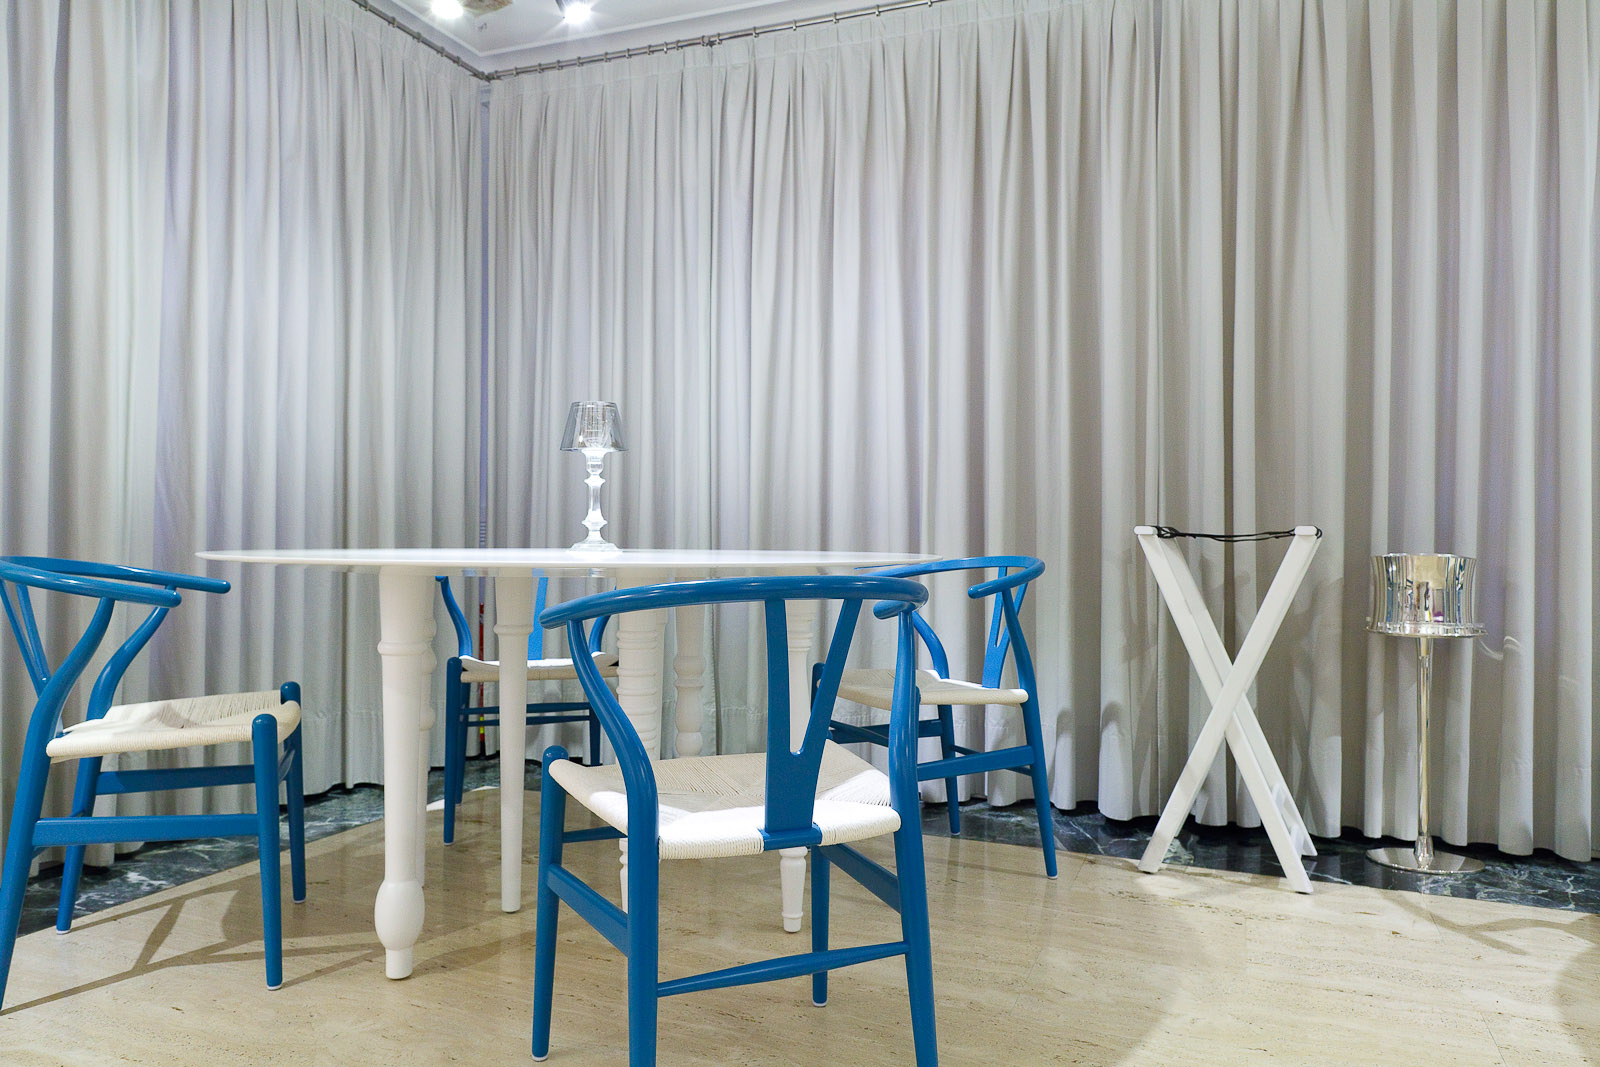 The minimalist dining room